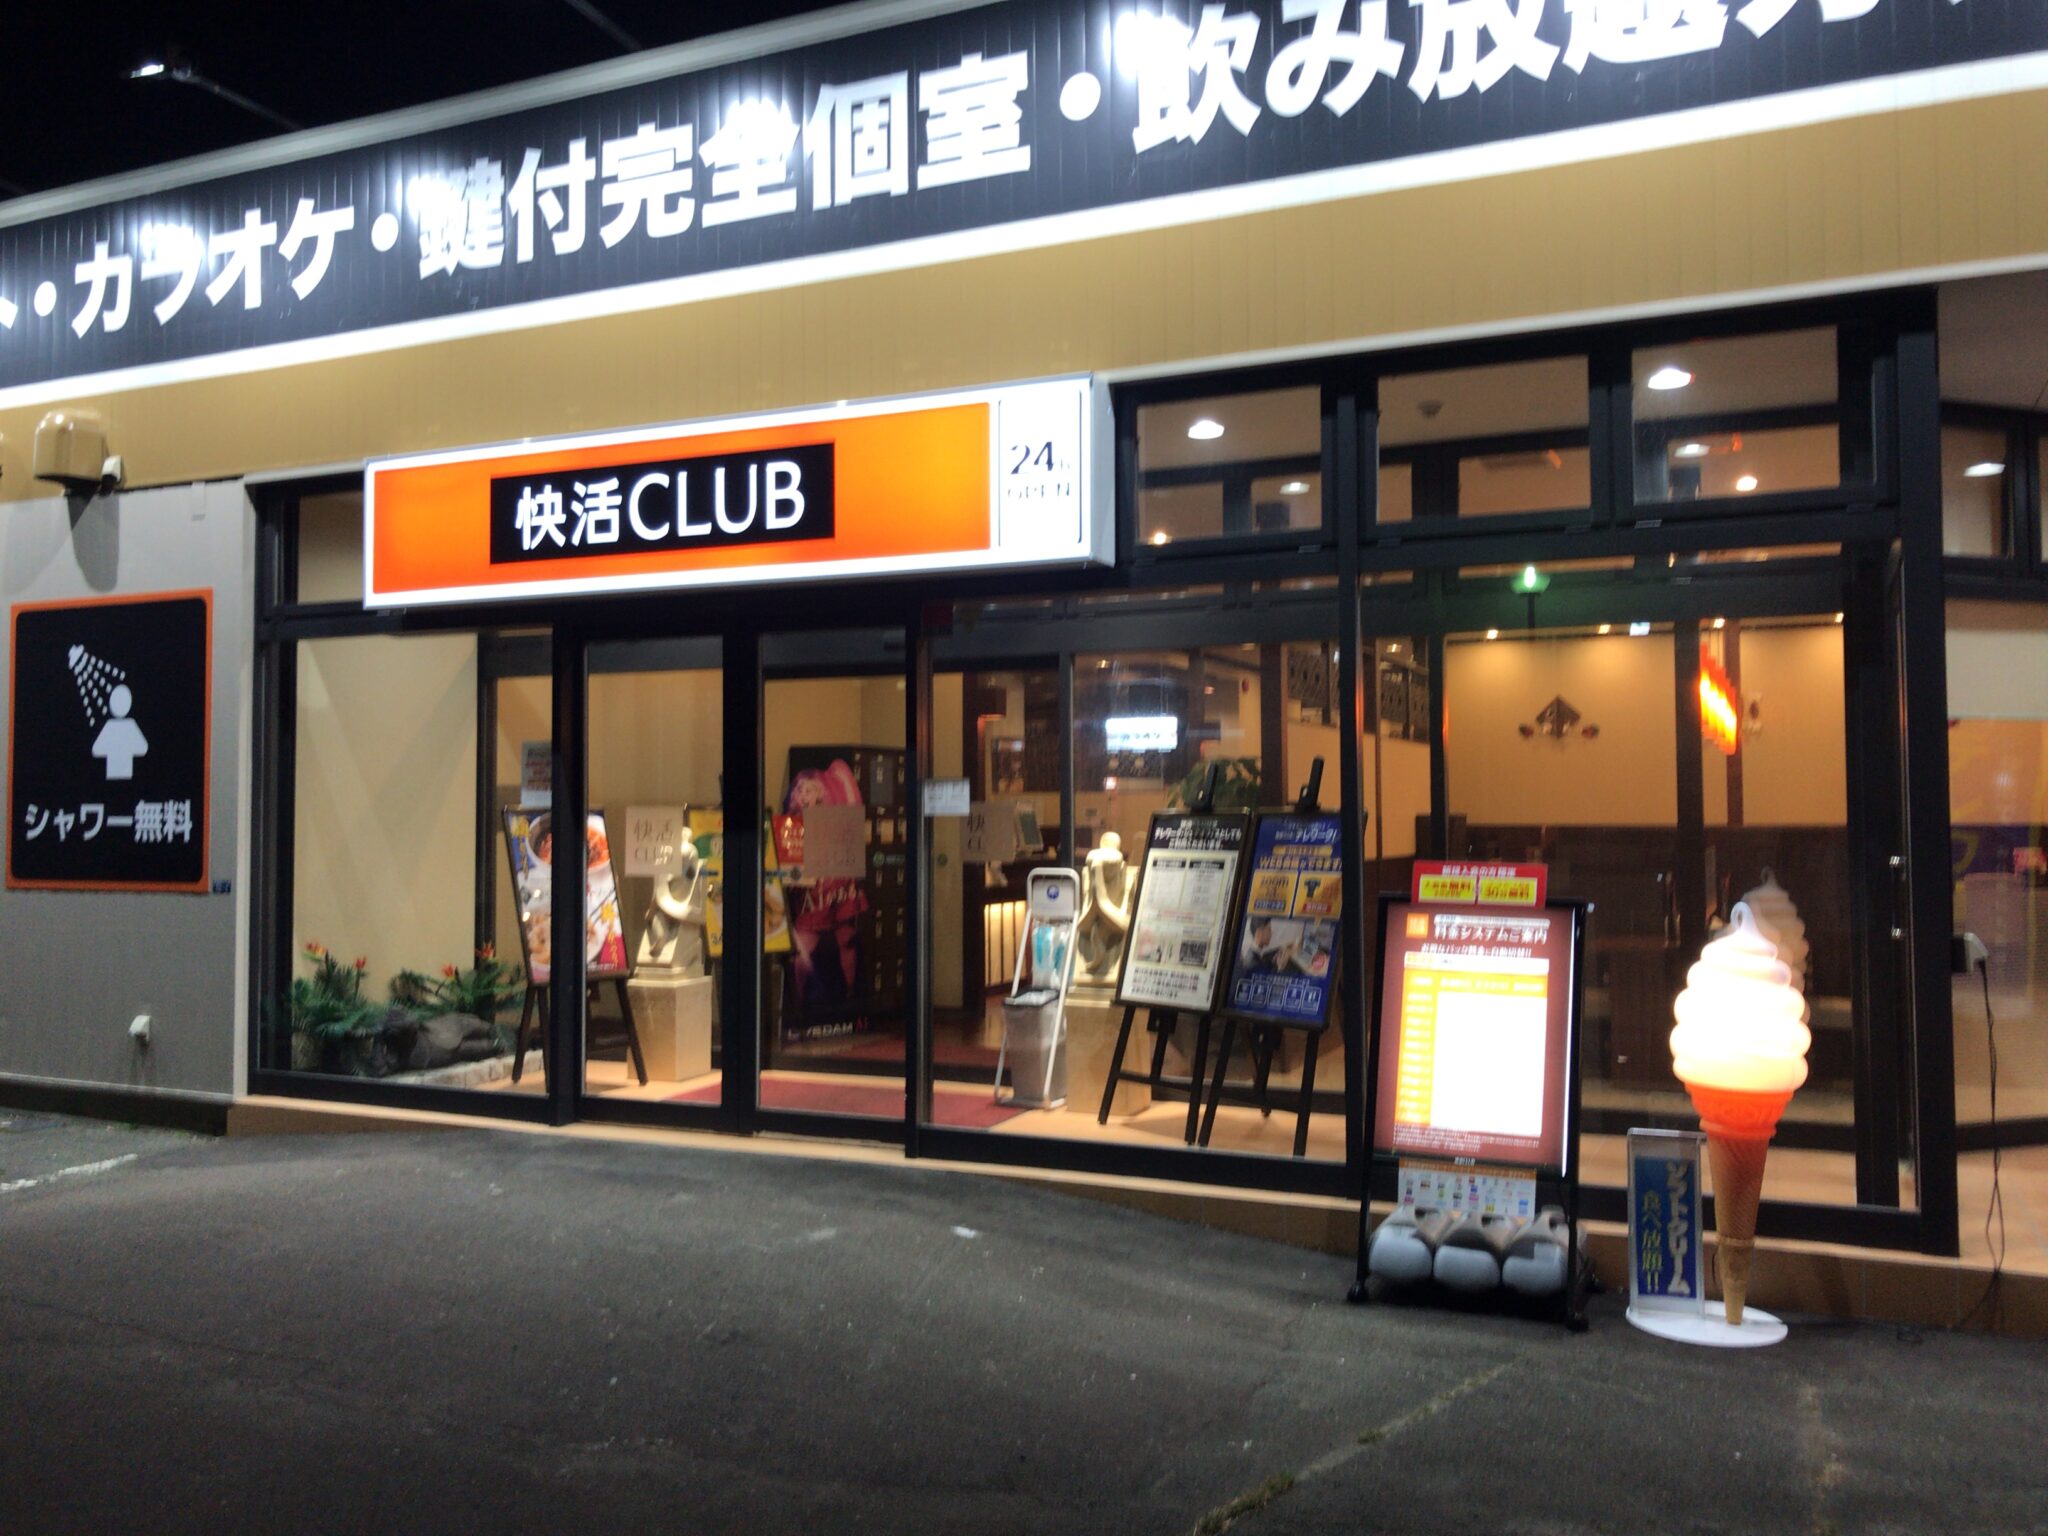 北見駅から車で8分 快活club 北見店をレポート 日本全国のネカフェ 漫画喫茶マップのヒマップ